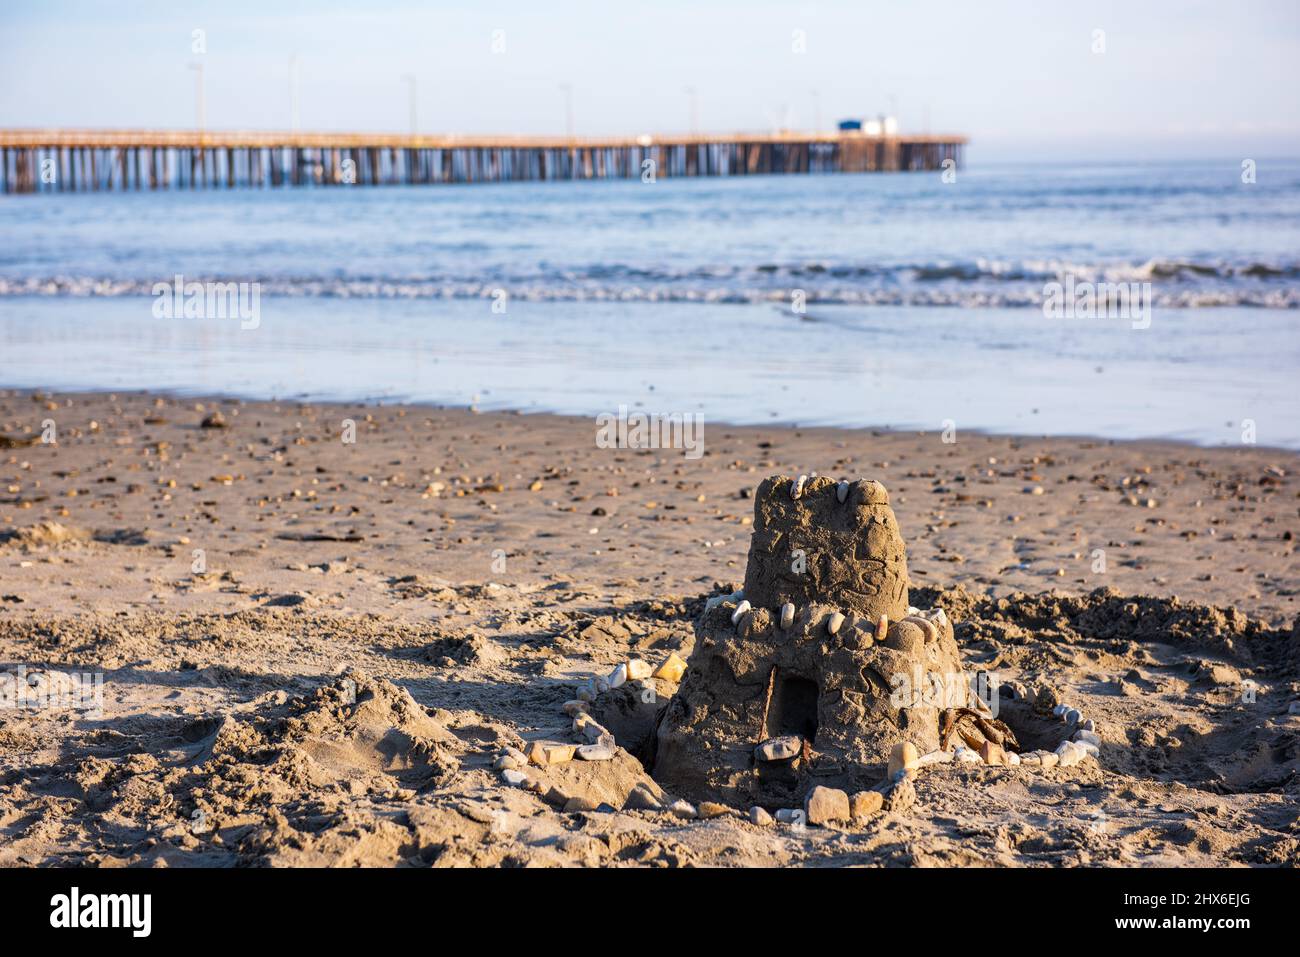 Castillo de arena de dos pisos decorado con conchas en la orilla de Avila Beach, con muelle en el fondo. Foto de stock